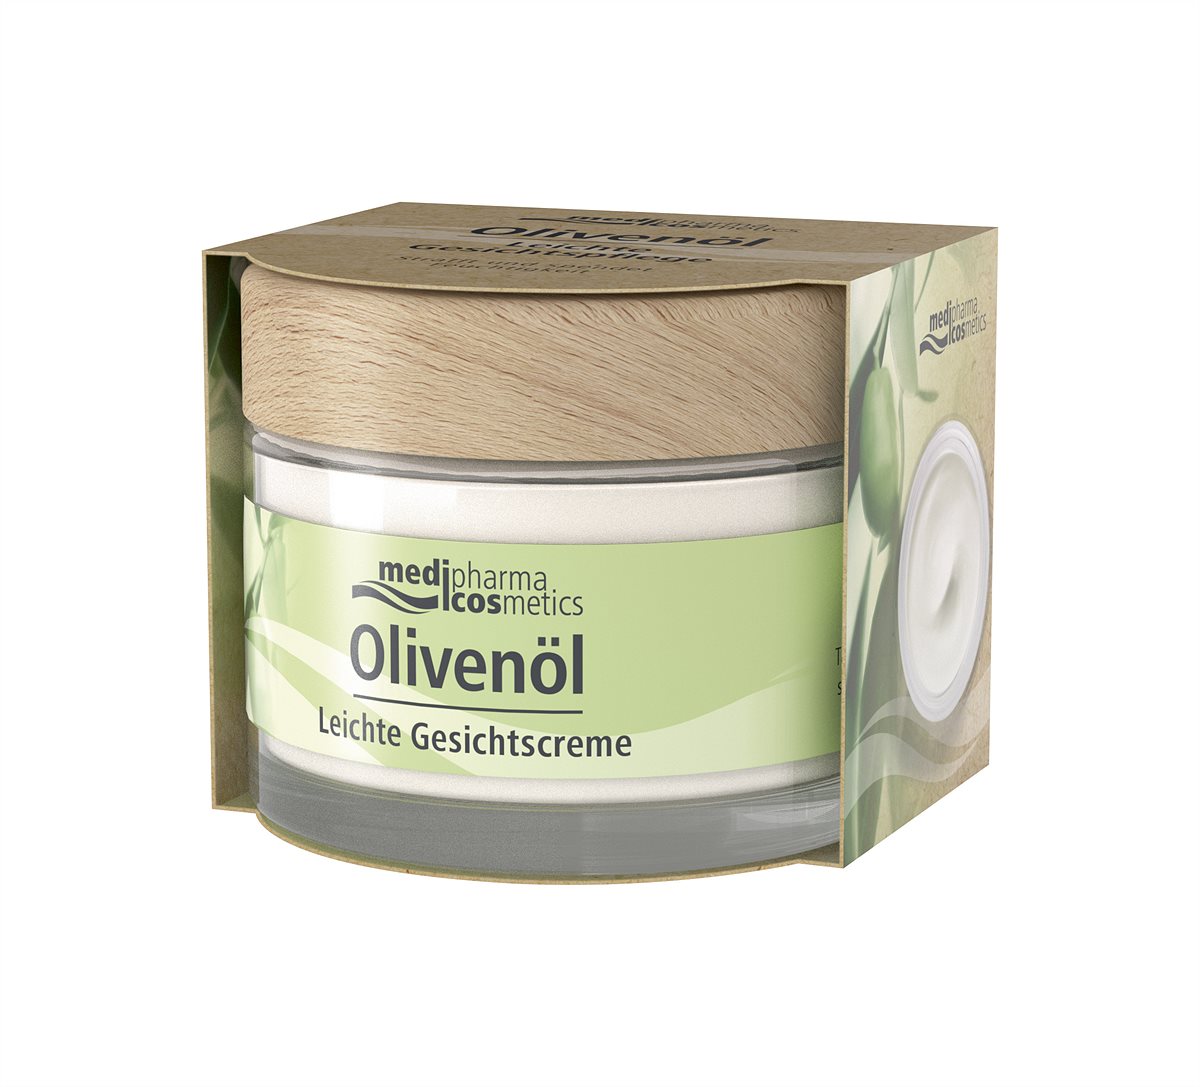 medipharma cosmetics Olivenöl Leichte Gesichtscreme